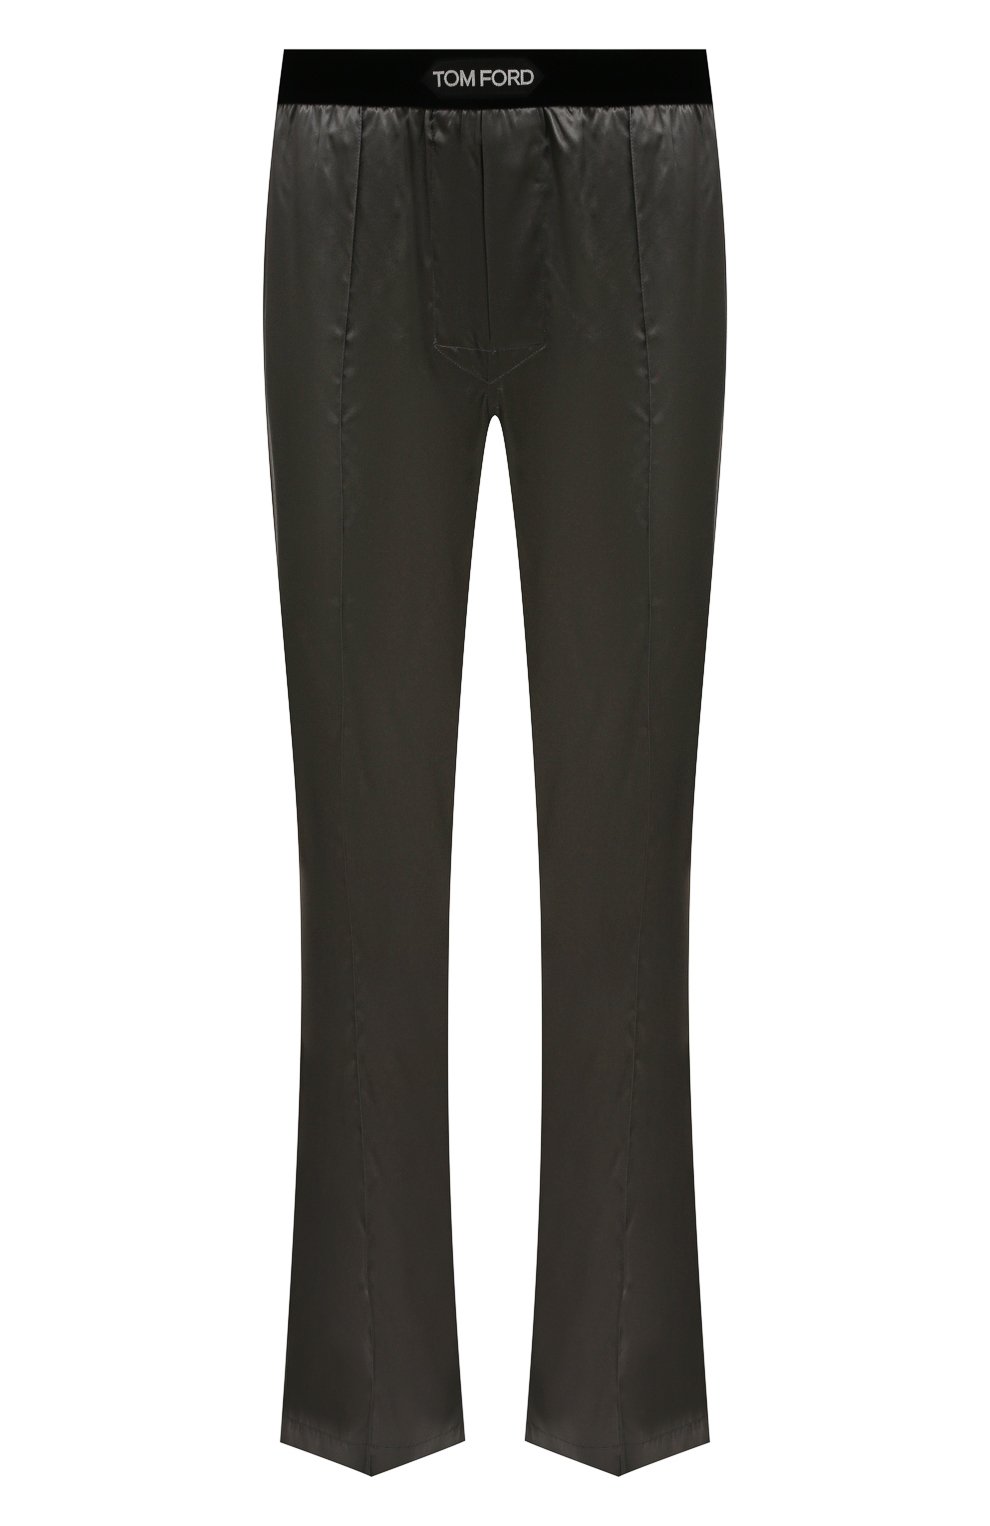 Мужские шелковые домашние брюки TOM FORD темно-серого цвета, арт. T4H201010 | Фото 1 (Материал внешний: Шелк; Длина (брюки, джинсы): Стандартные; Кросс-КТ: домашняя одежда)